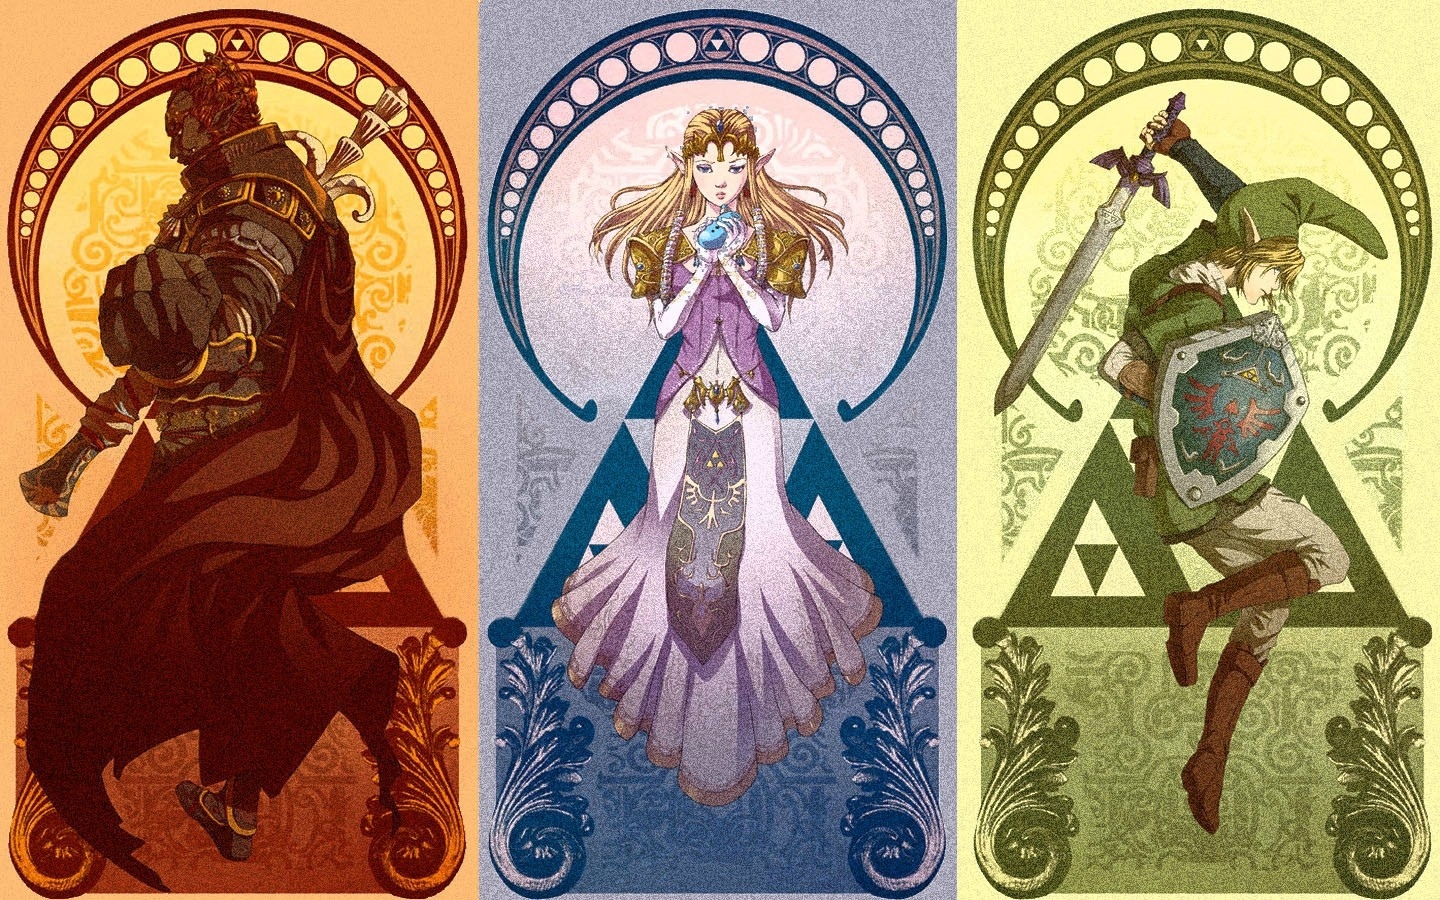 Link, Zelda, and Ganon